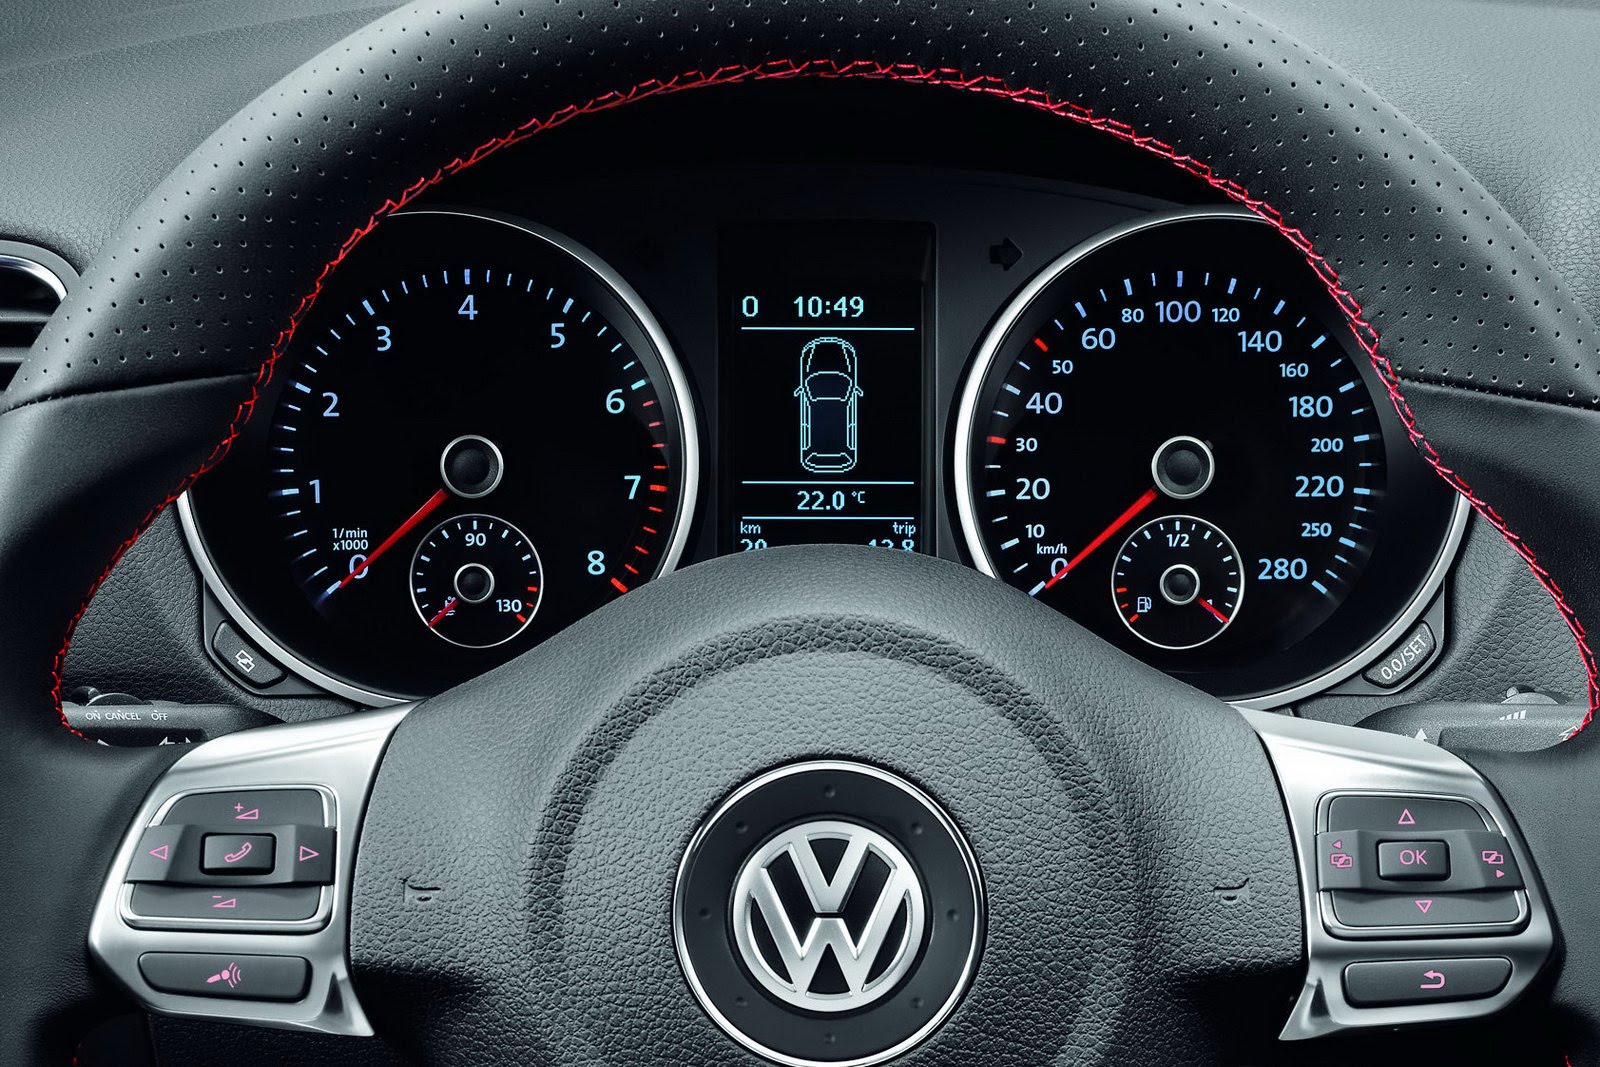 Оснащен ли VW Golf VI системой ESP?